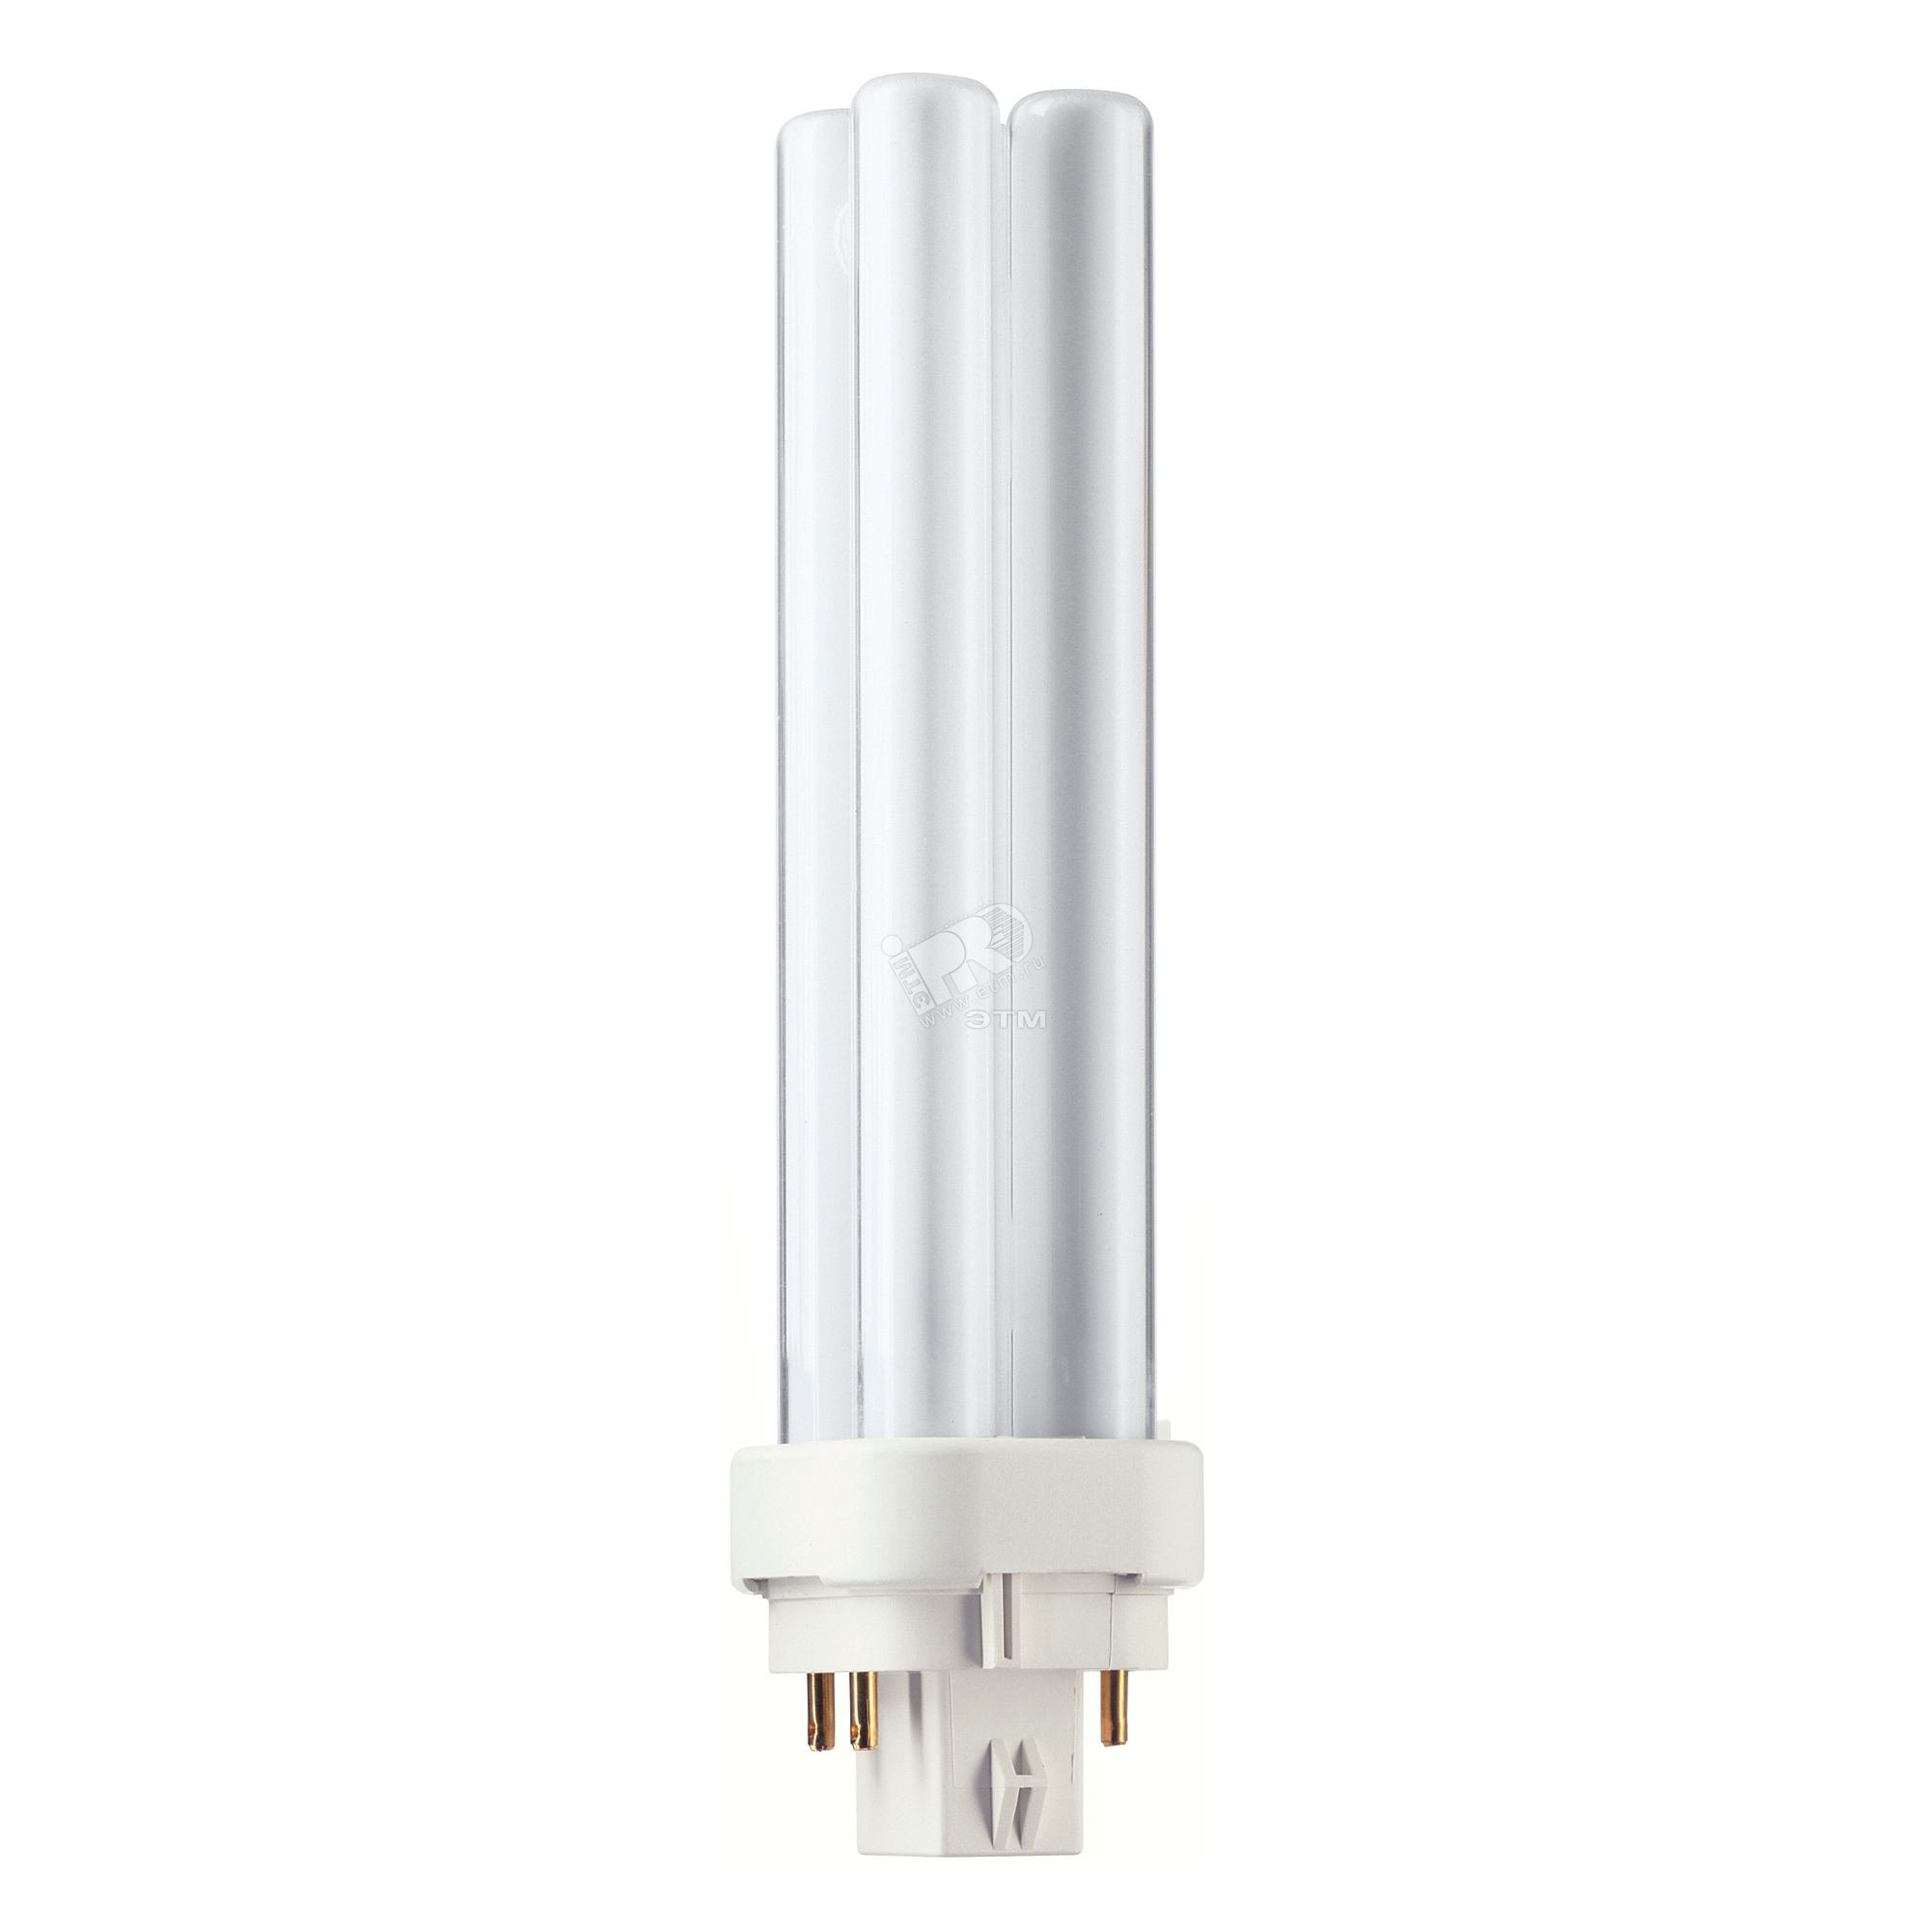 Лампа энергосберегающая КЛЛ 18Вт PL-C 18/840 4p G24q-2 927907284040 PHILIPS Lightning